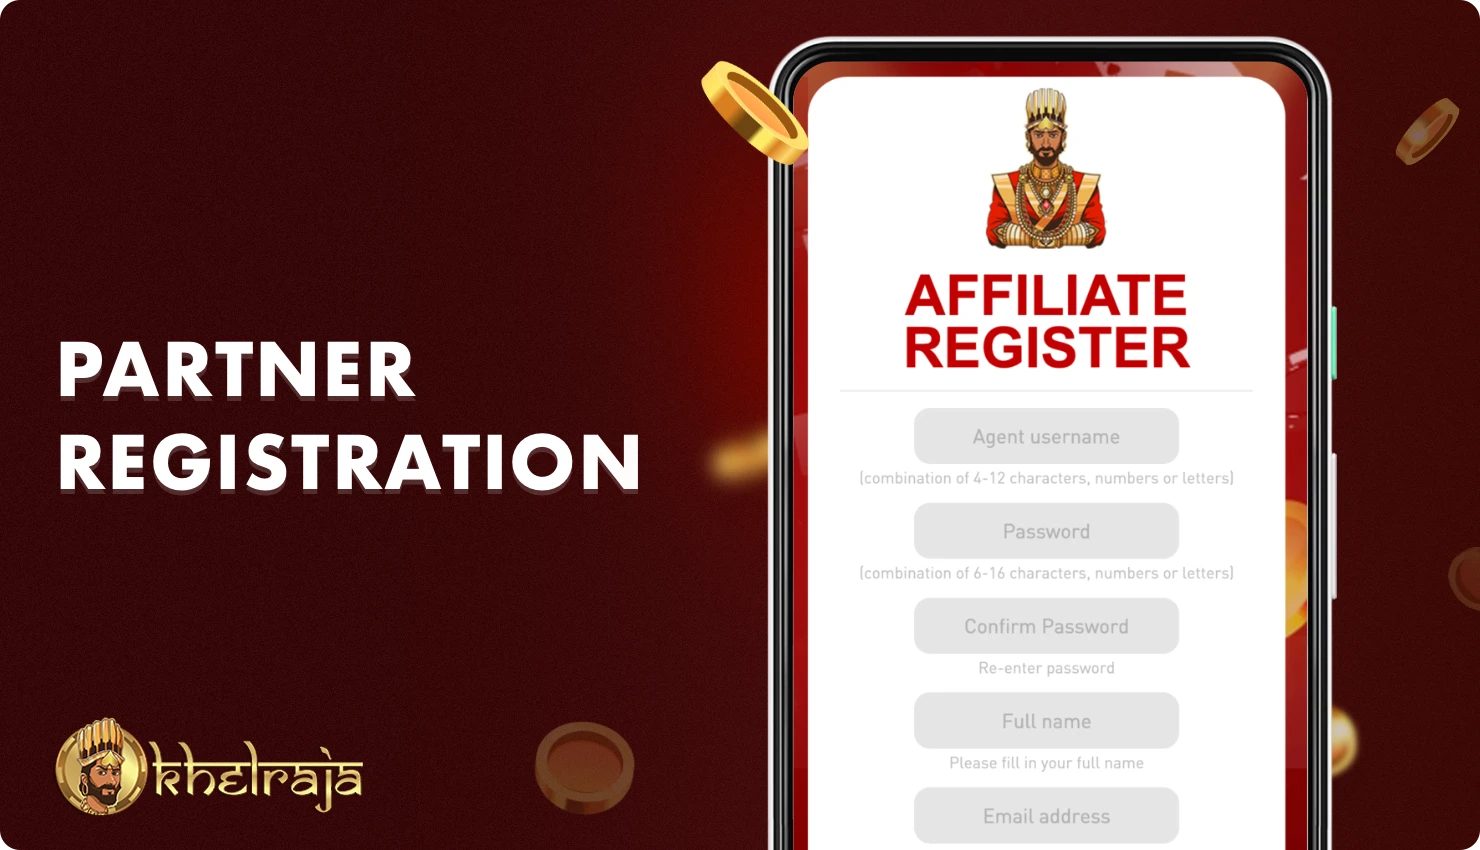 Registration in the Khelraja affiliate program takes several steps